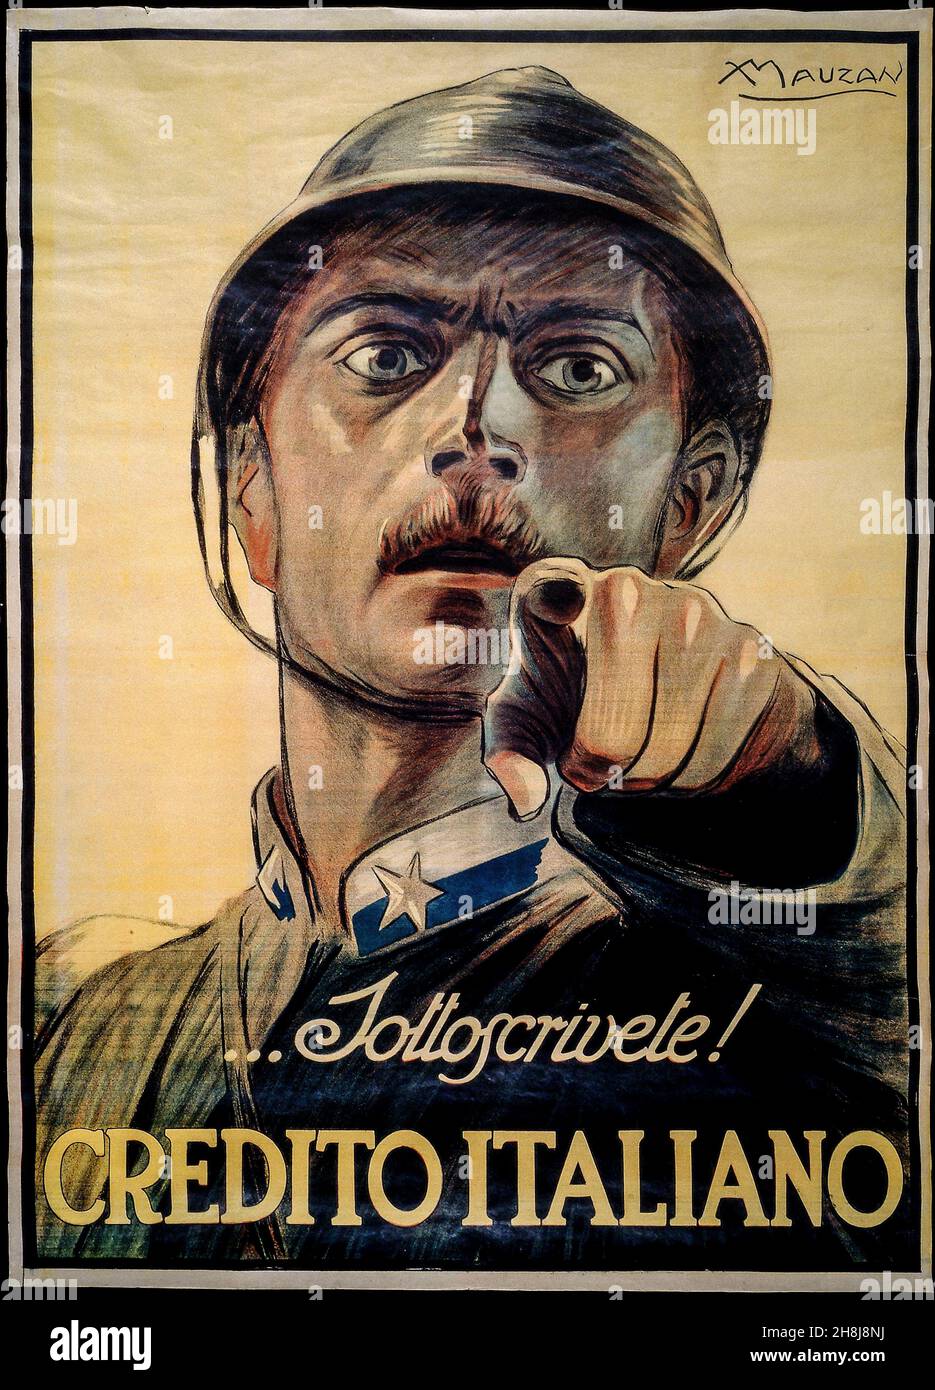 Achille Luciano Mauzan - slogan Poster per la sottoscrittura del credito italiano durante la prima Guerra Mondiale - 1917 Foto Stock